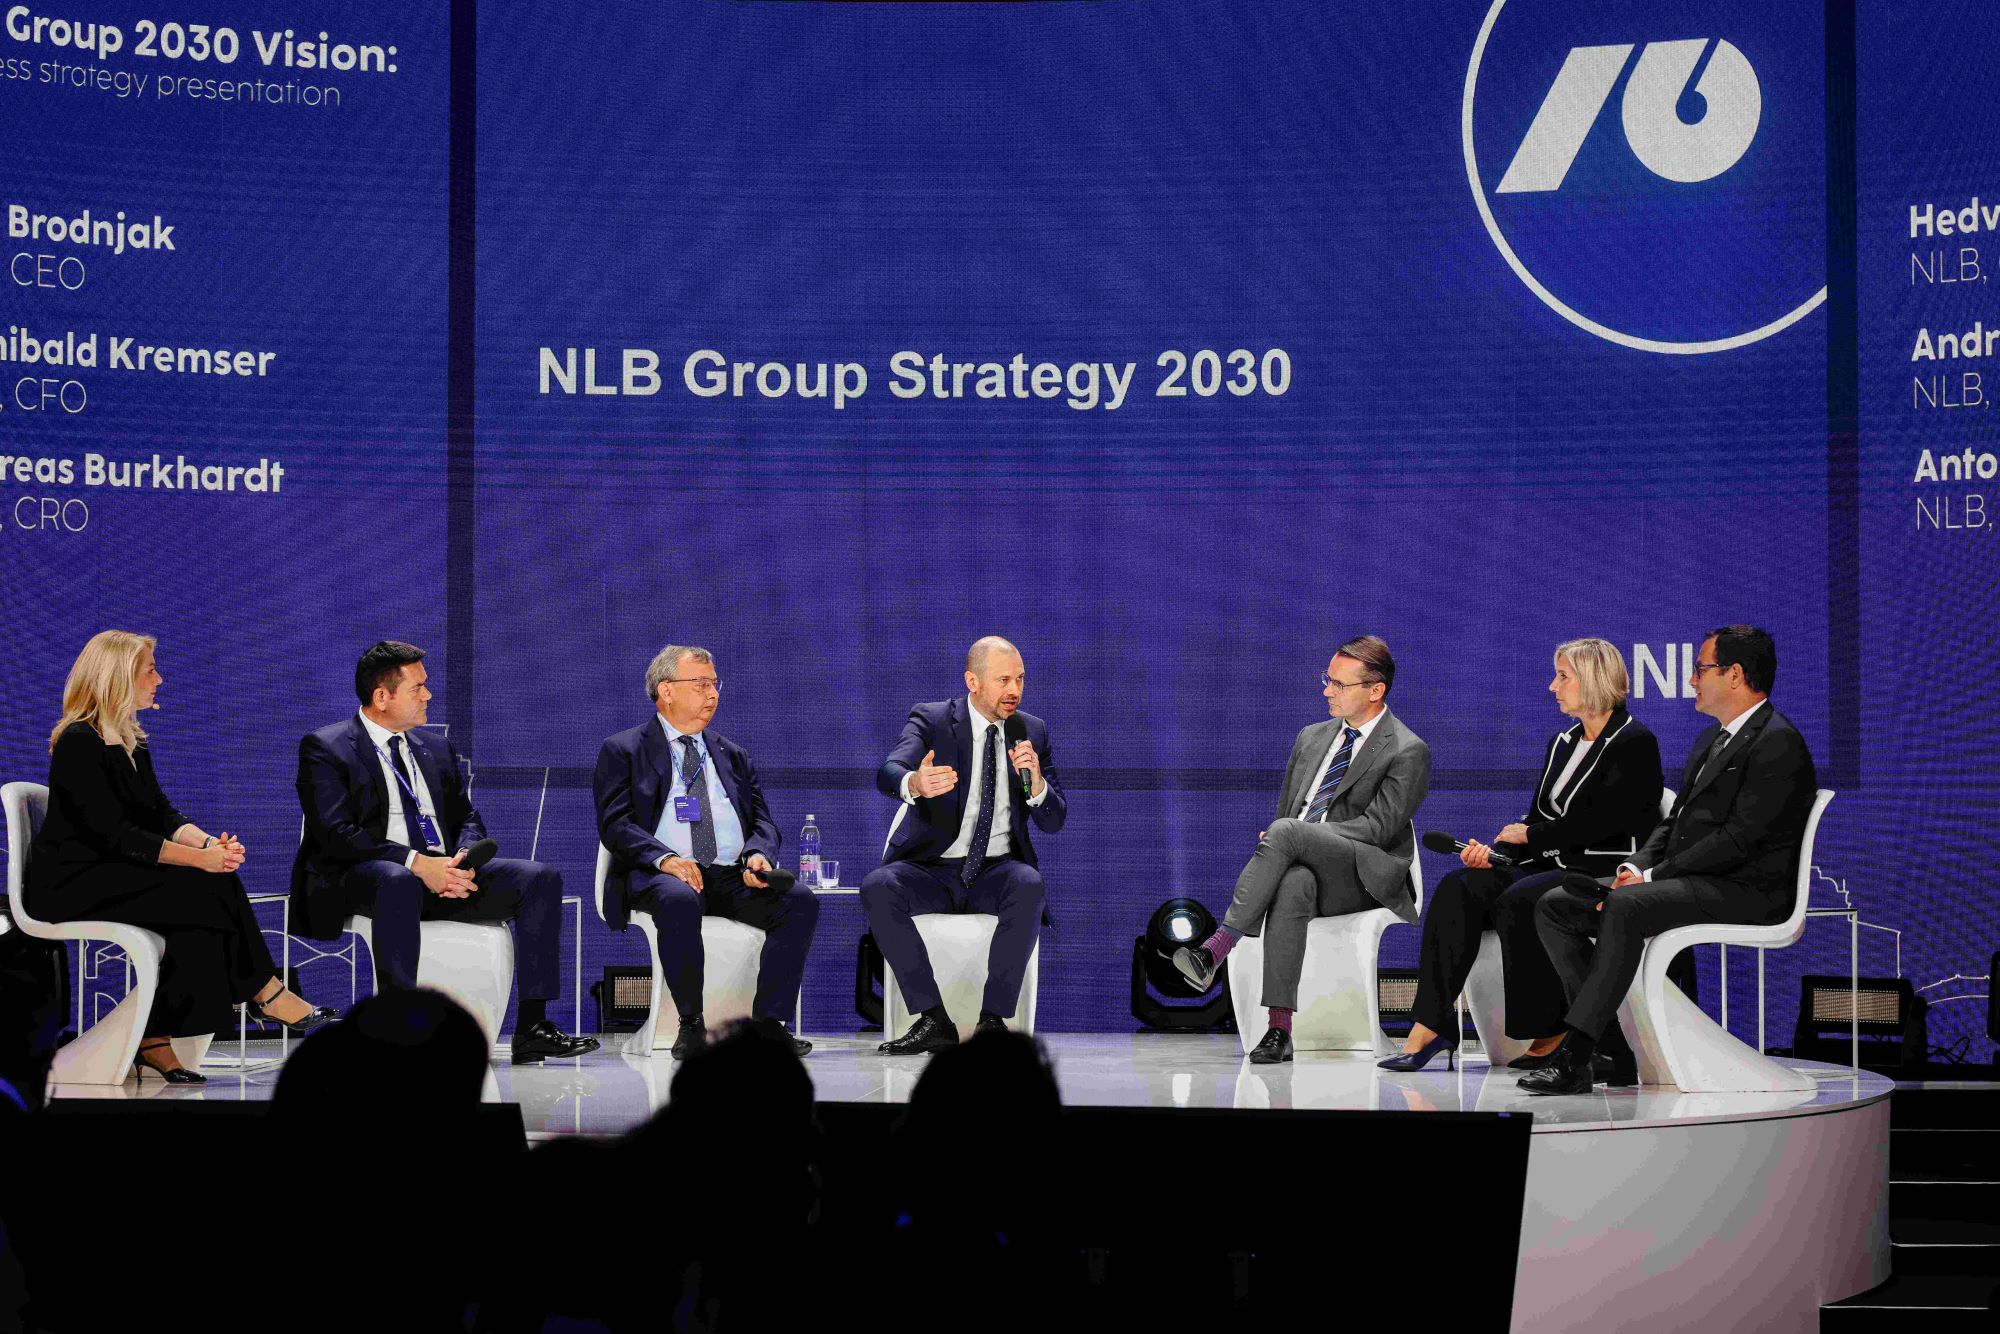 NLB Grupa predstavila novu poslovnu strategiju i viziju do 2030. godine